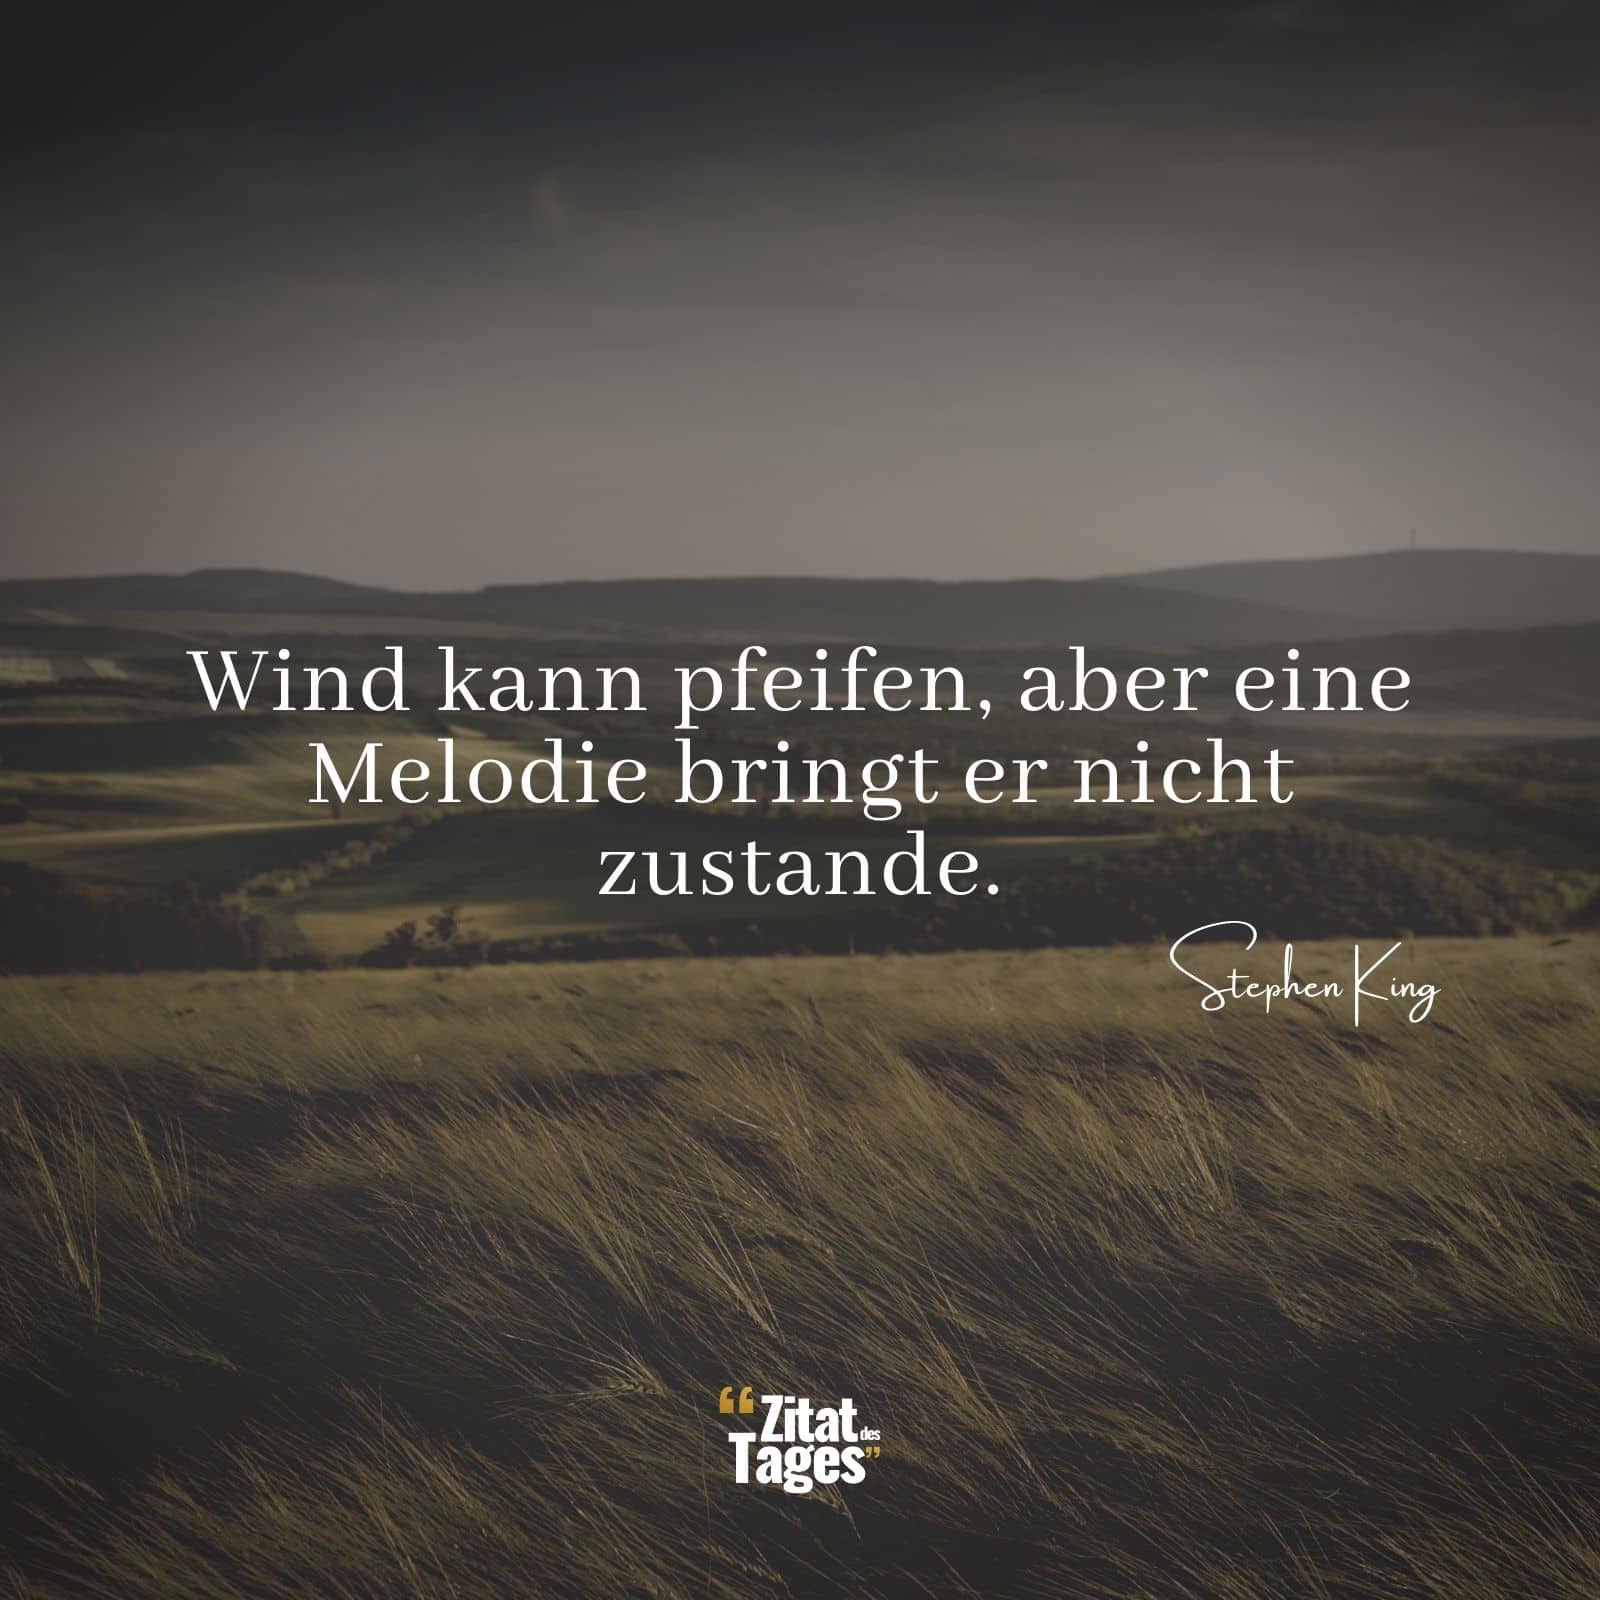 Wind kann pfeifen, aber eine Melodie bringt er nicht zustande. - Stephen King